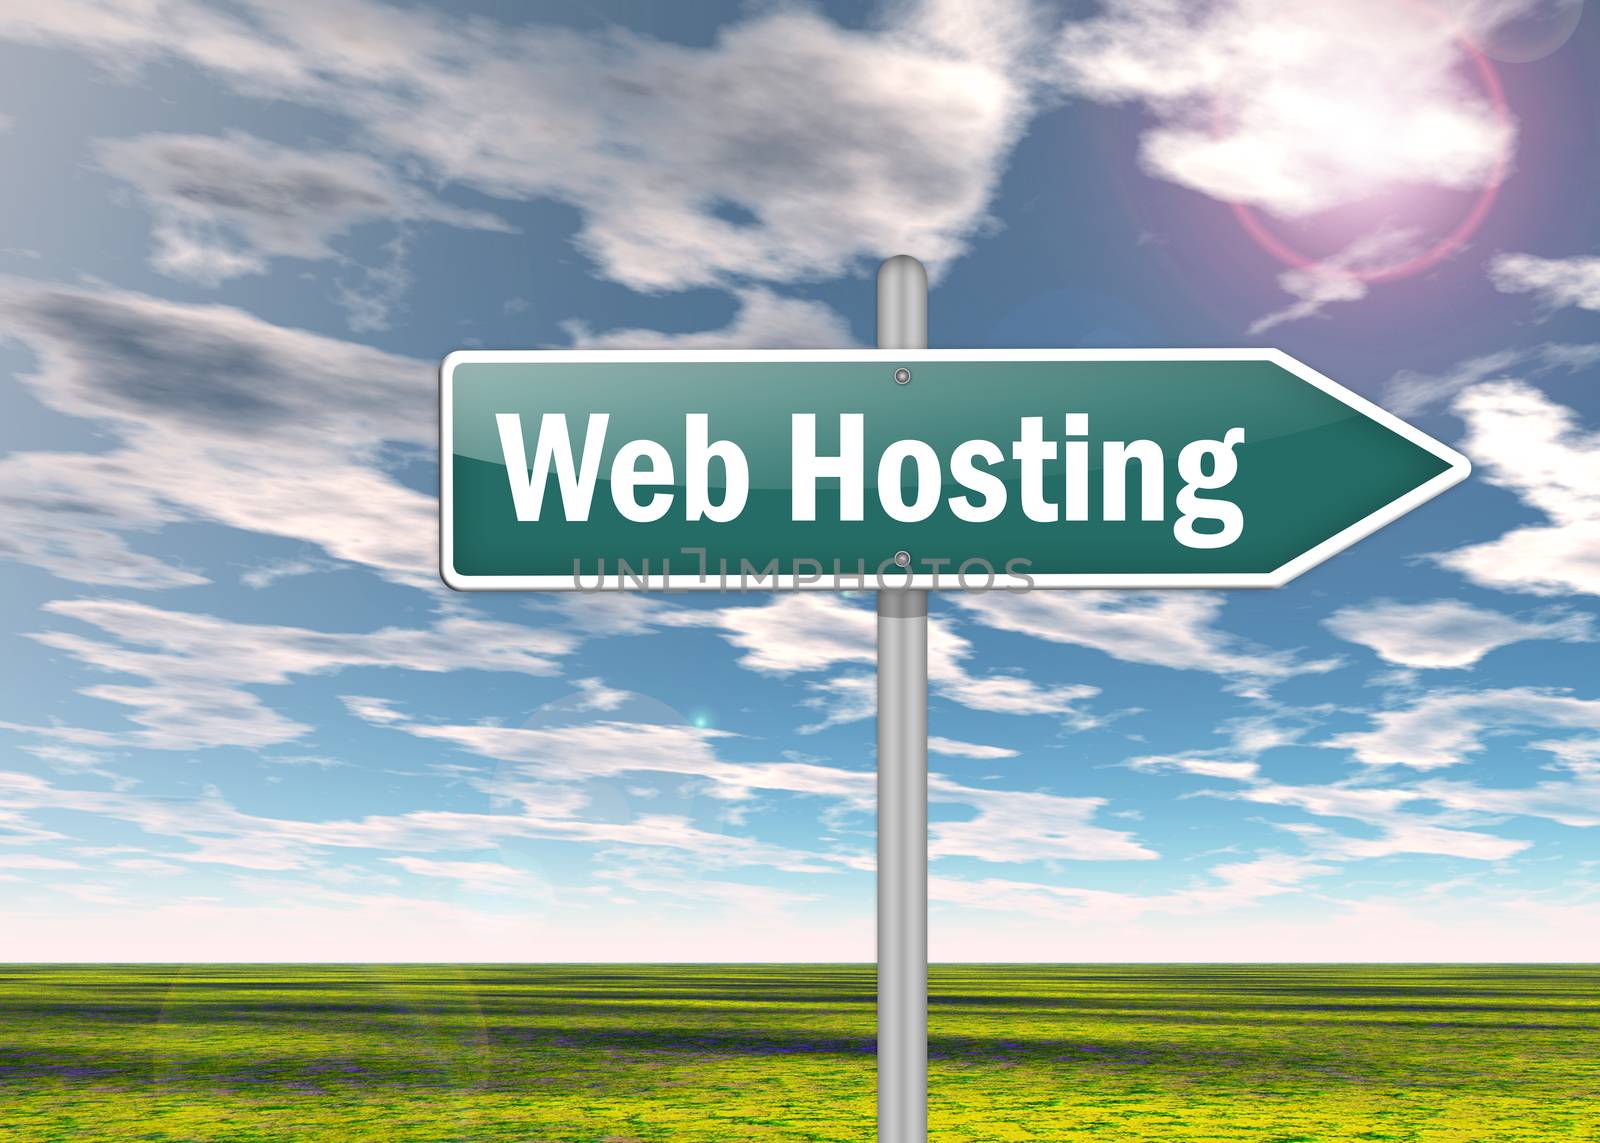 Signpost "Web Hosting" by mindscanner